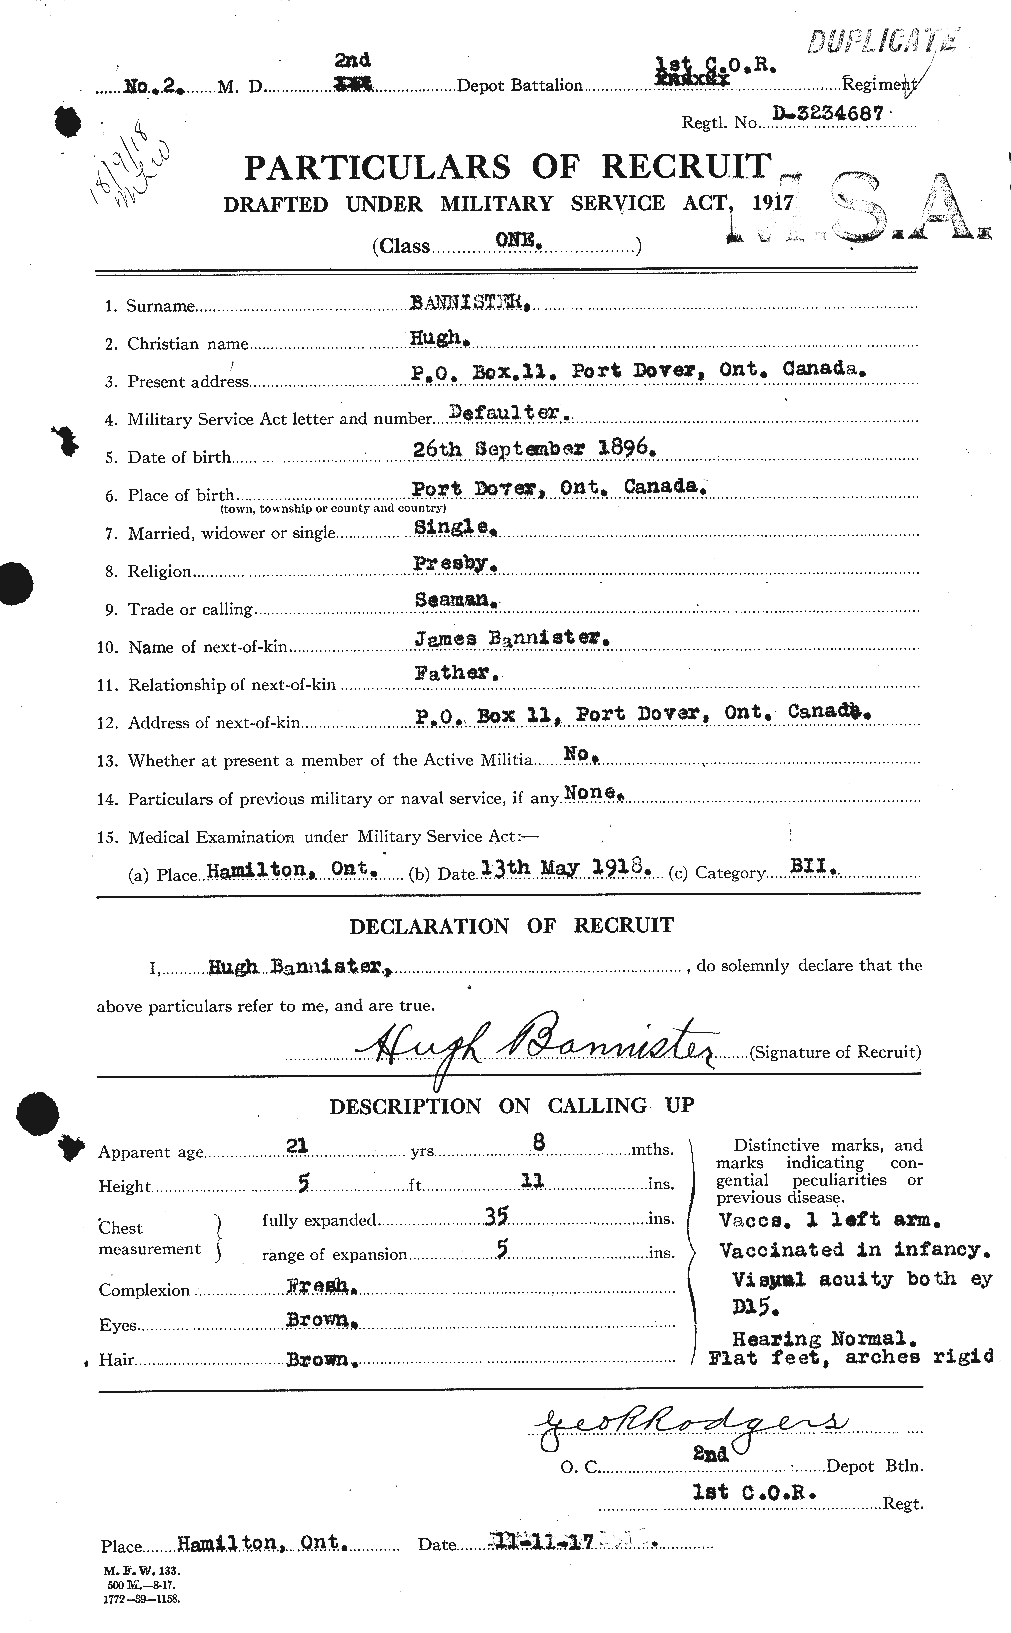 Dossiers du Personnel de la Première Guerre mondiale - CEC 224782a